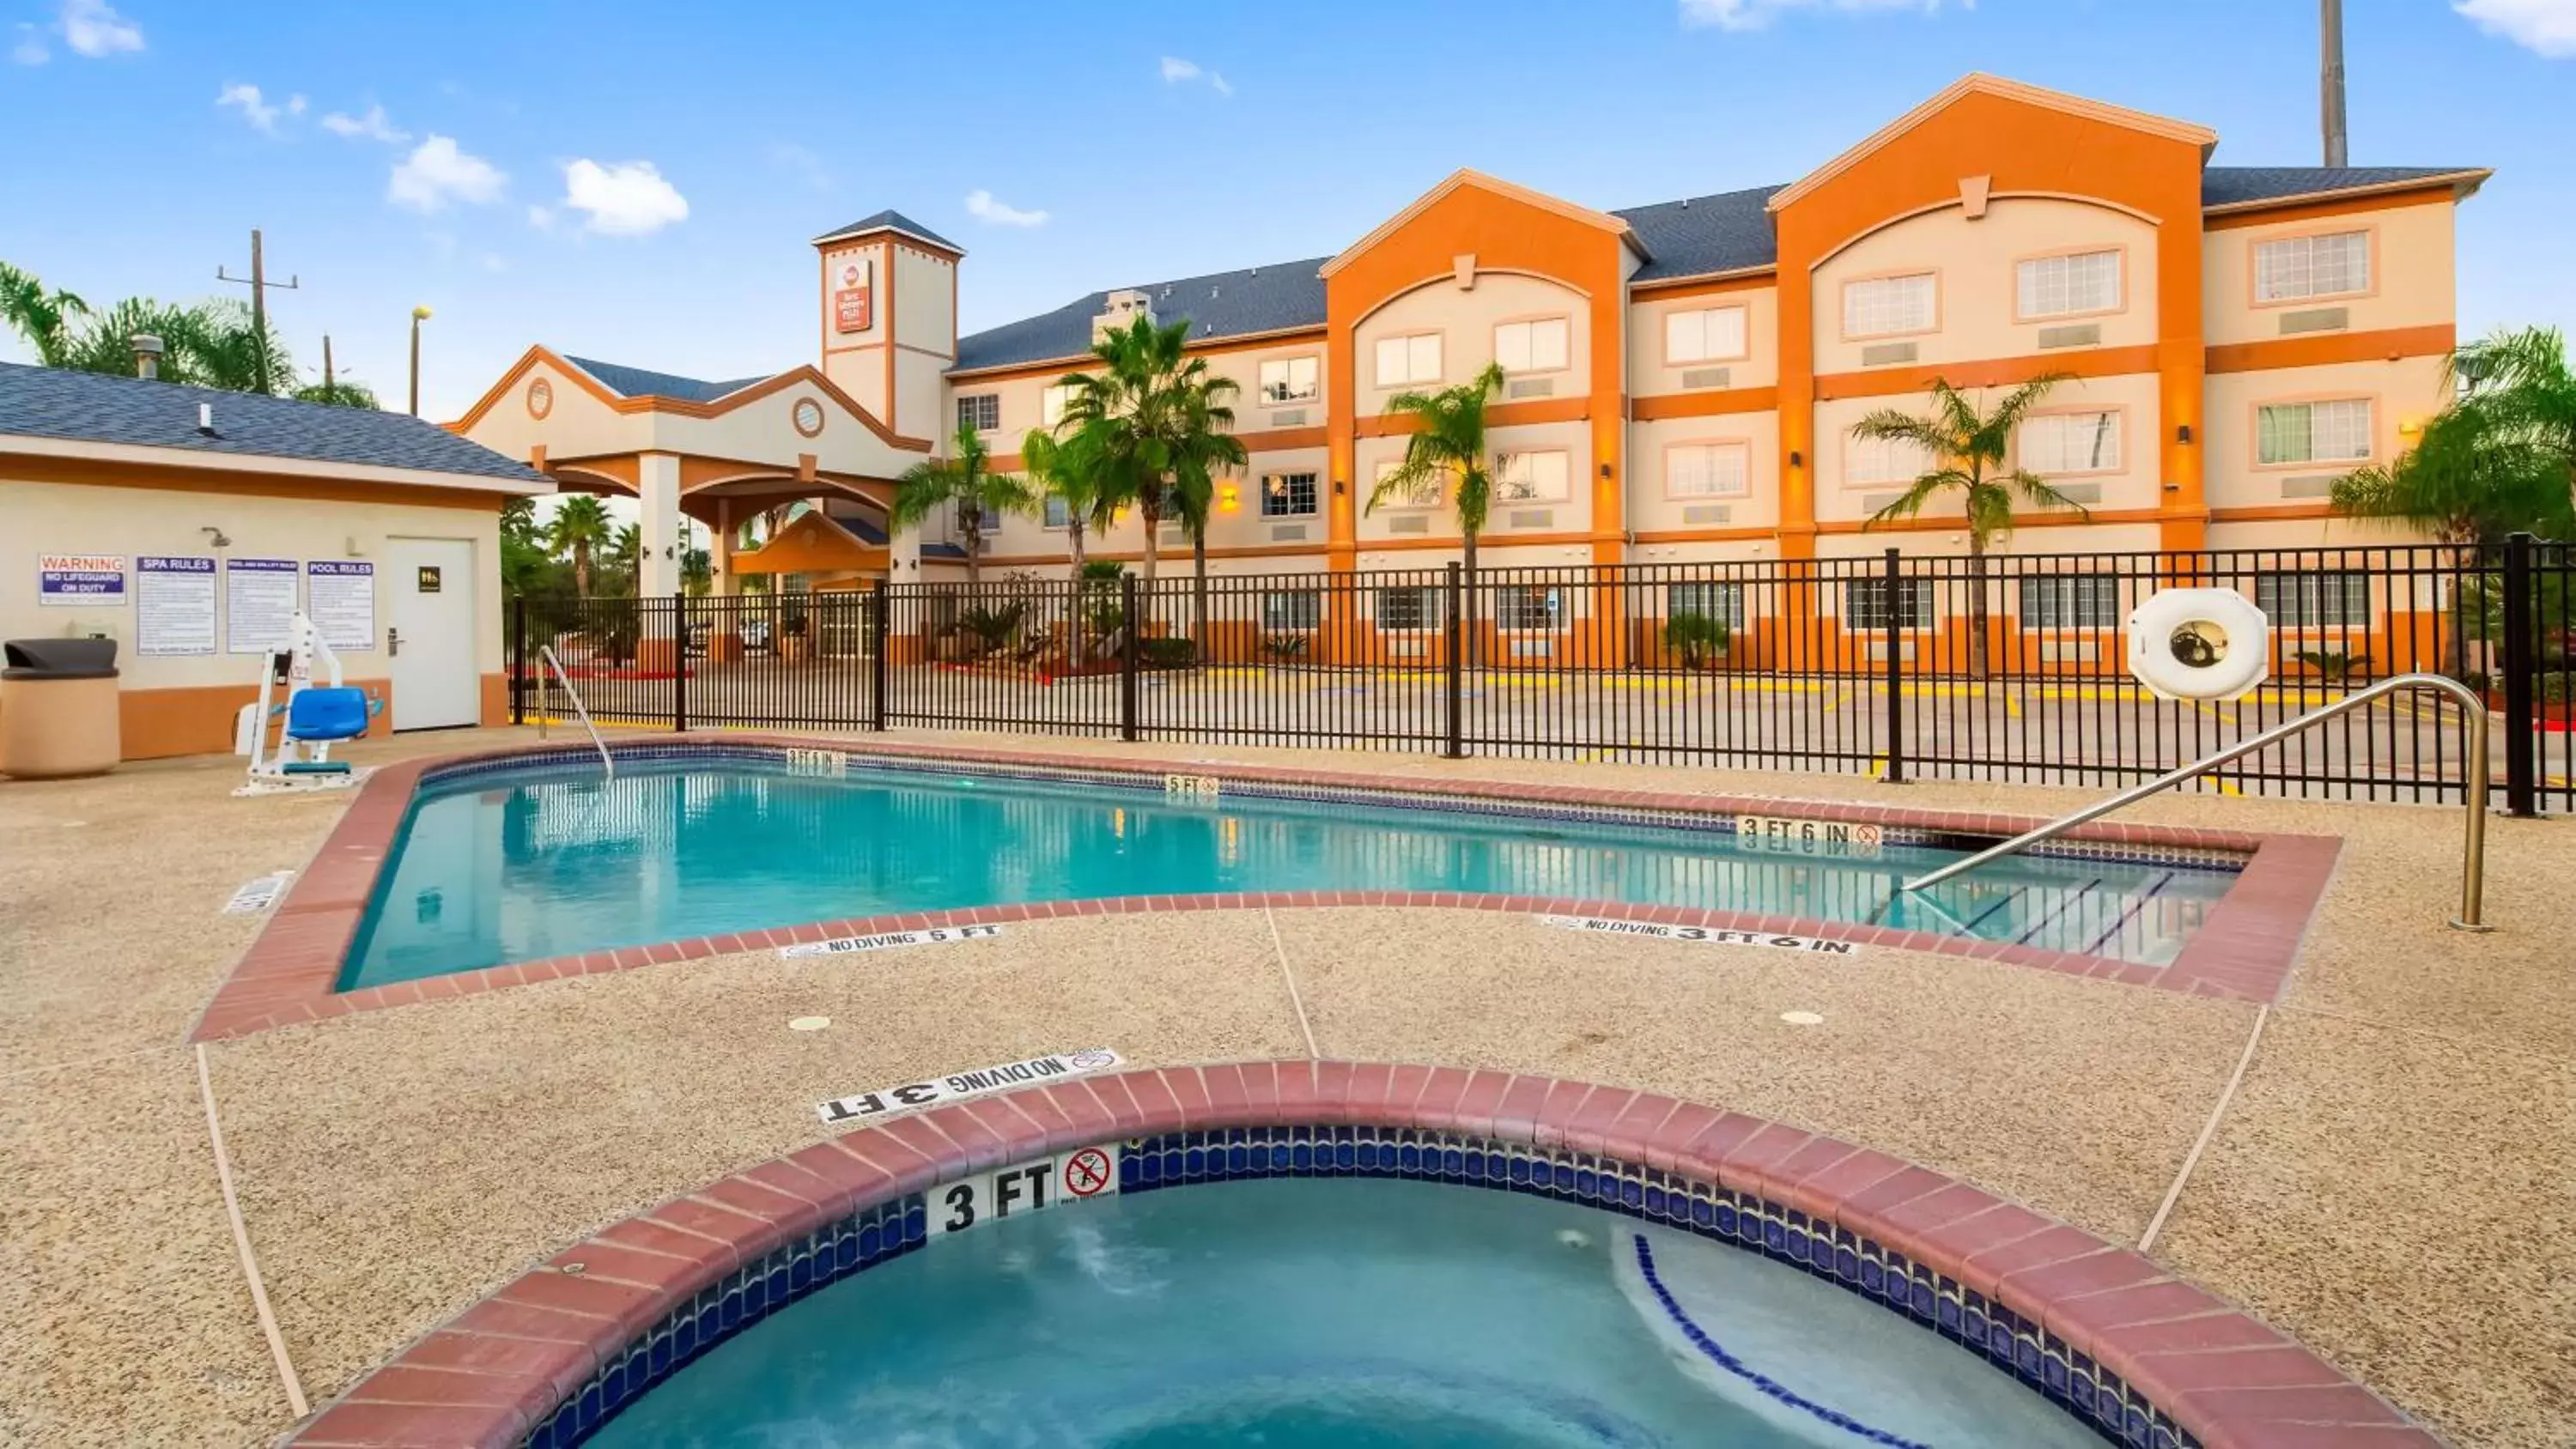 On site, Swimming Pool in Best Western Plus Houston Atascocita Inn & Suites